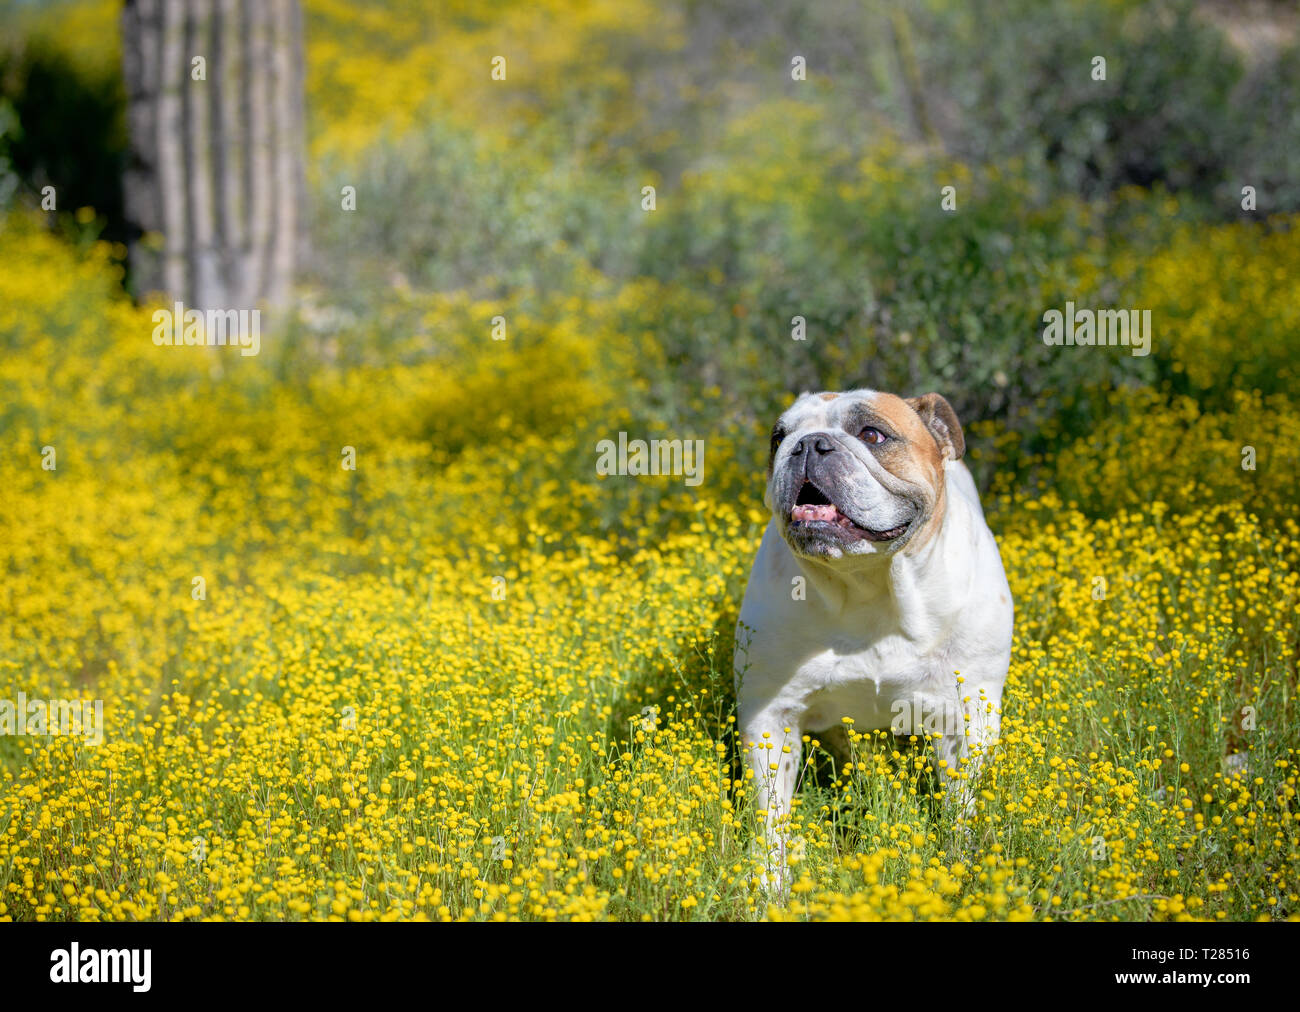 White bulldog posing in the desert wild flowers Stock Photo